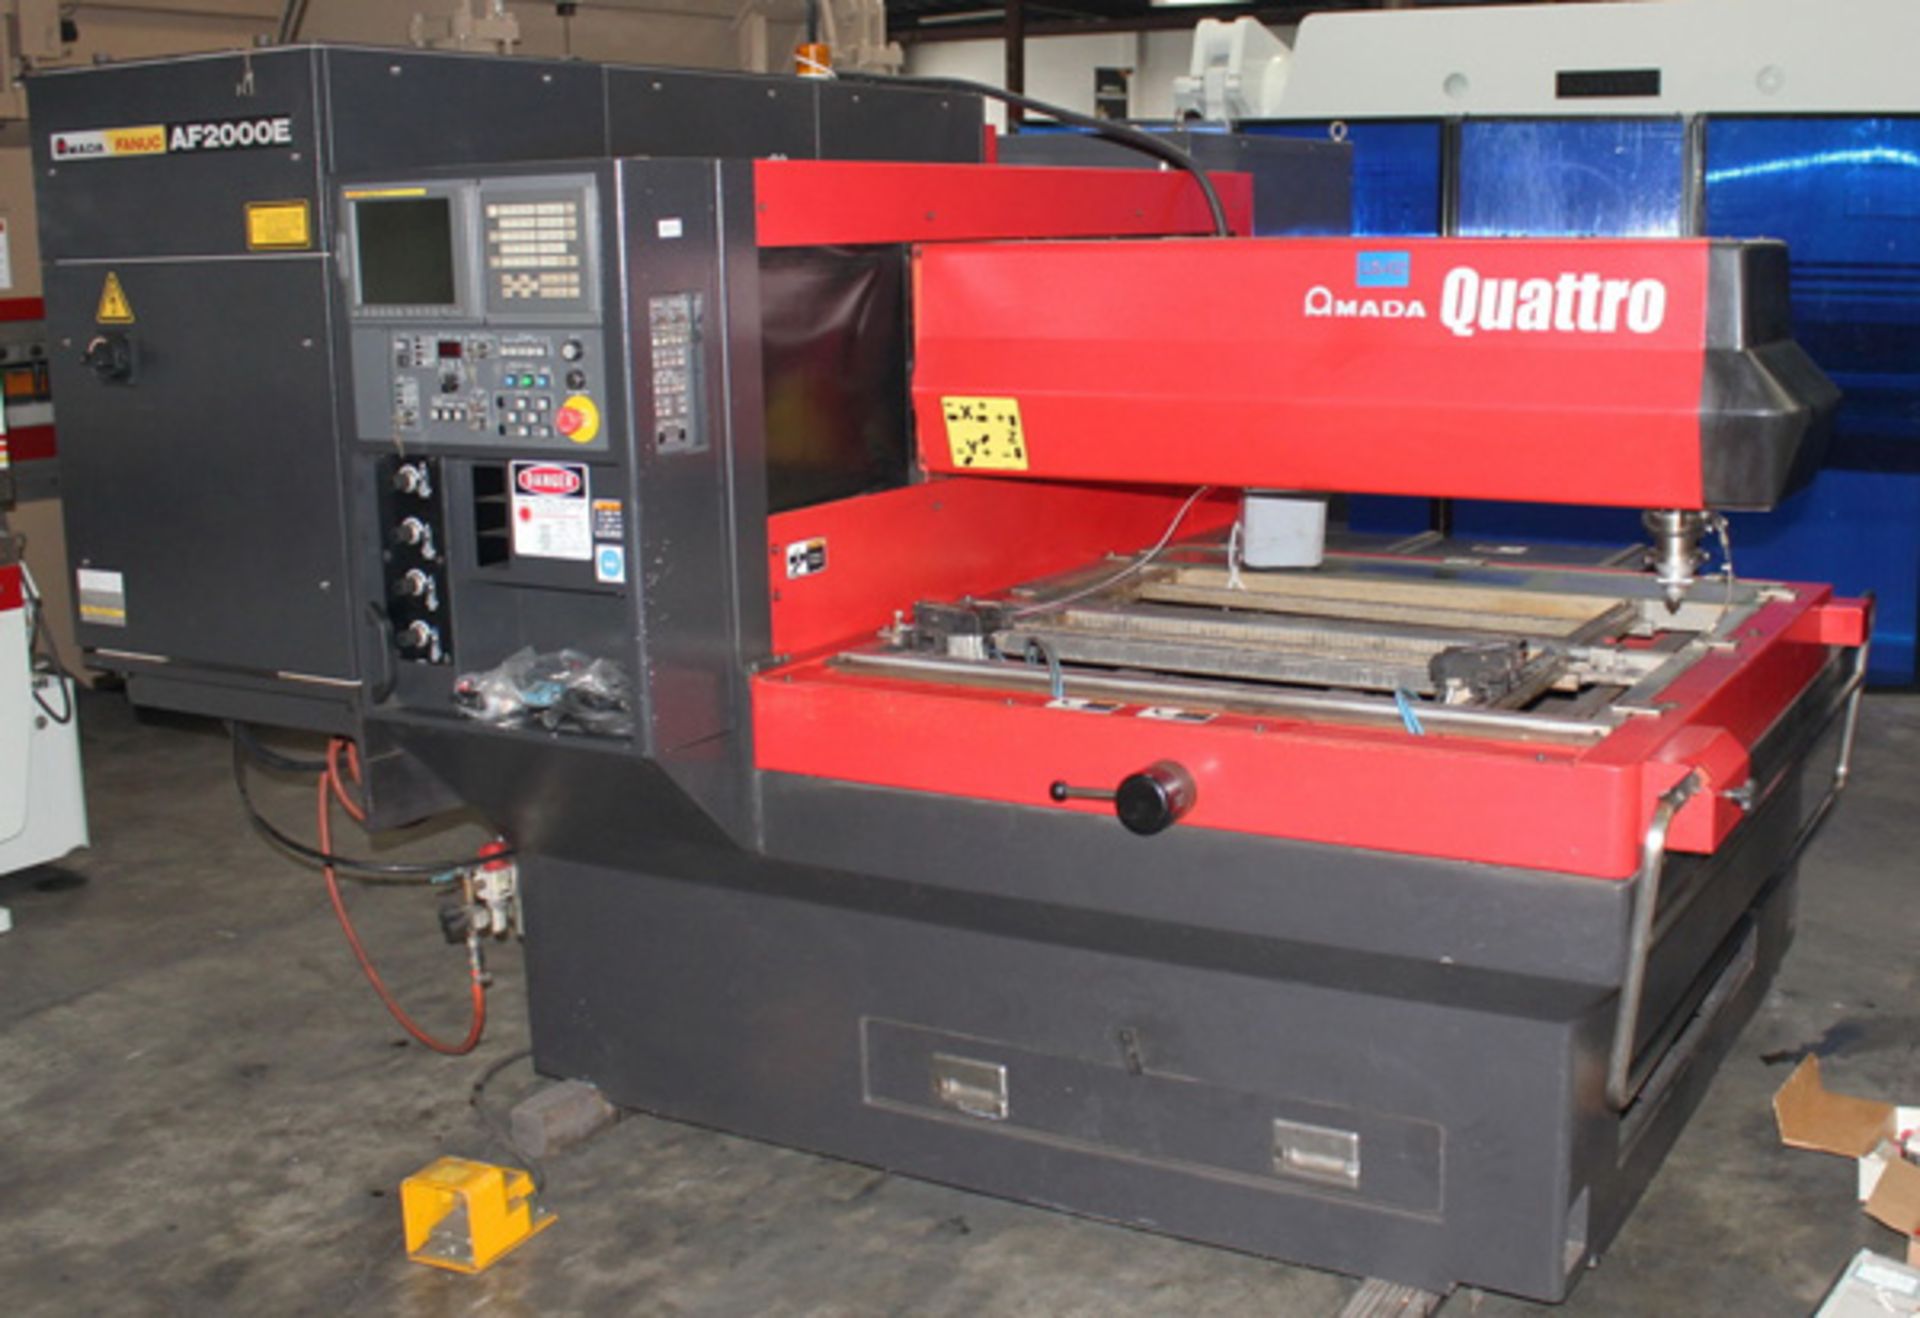 2011 Amada Quattro CNC Laser Cutting Machine 2,000 Watt x 49" x 49" x 3.9", Mdl: Quattro , S/N: